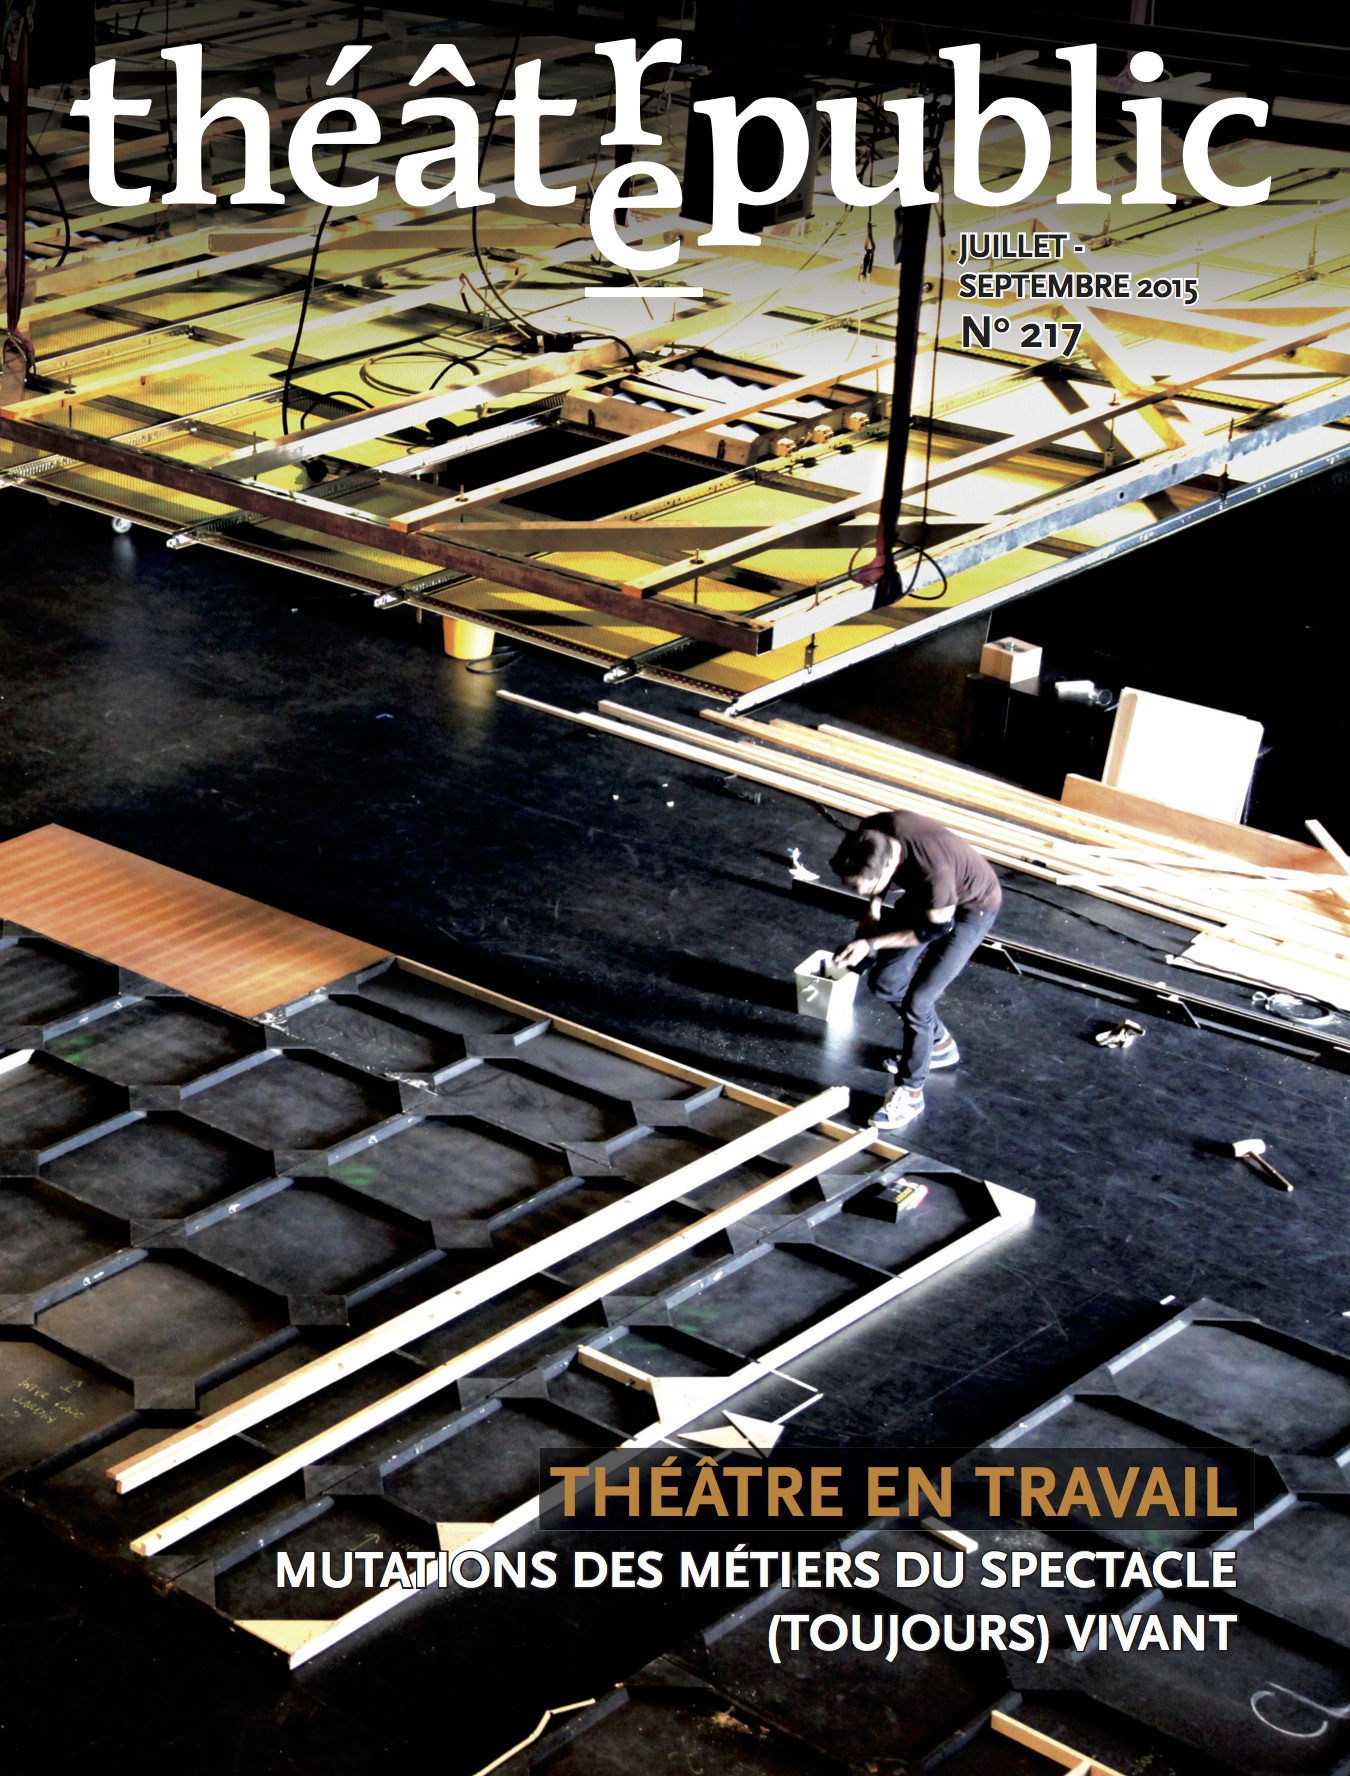 Théâtre en travail | Numéro 217 | Théâtre/Public